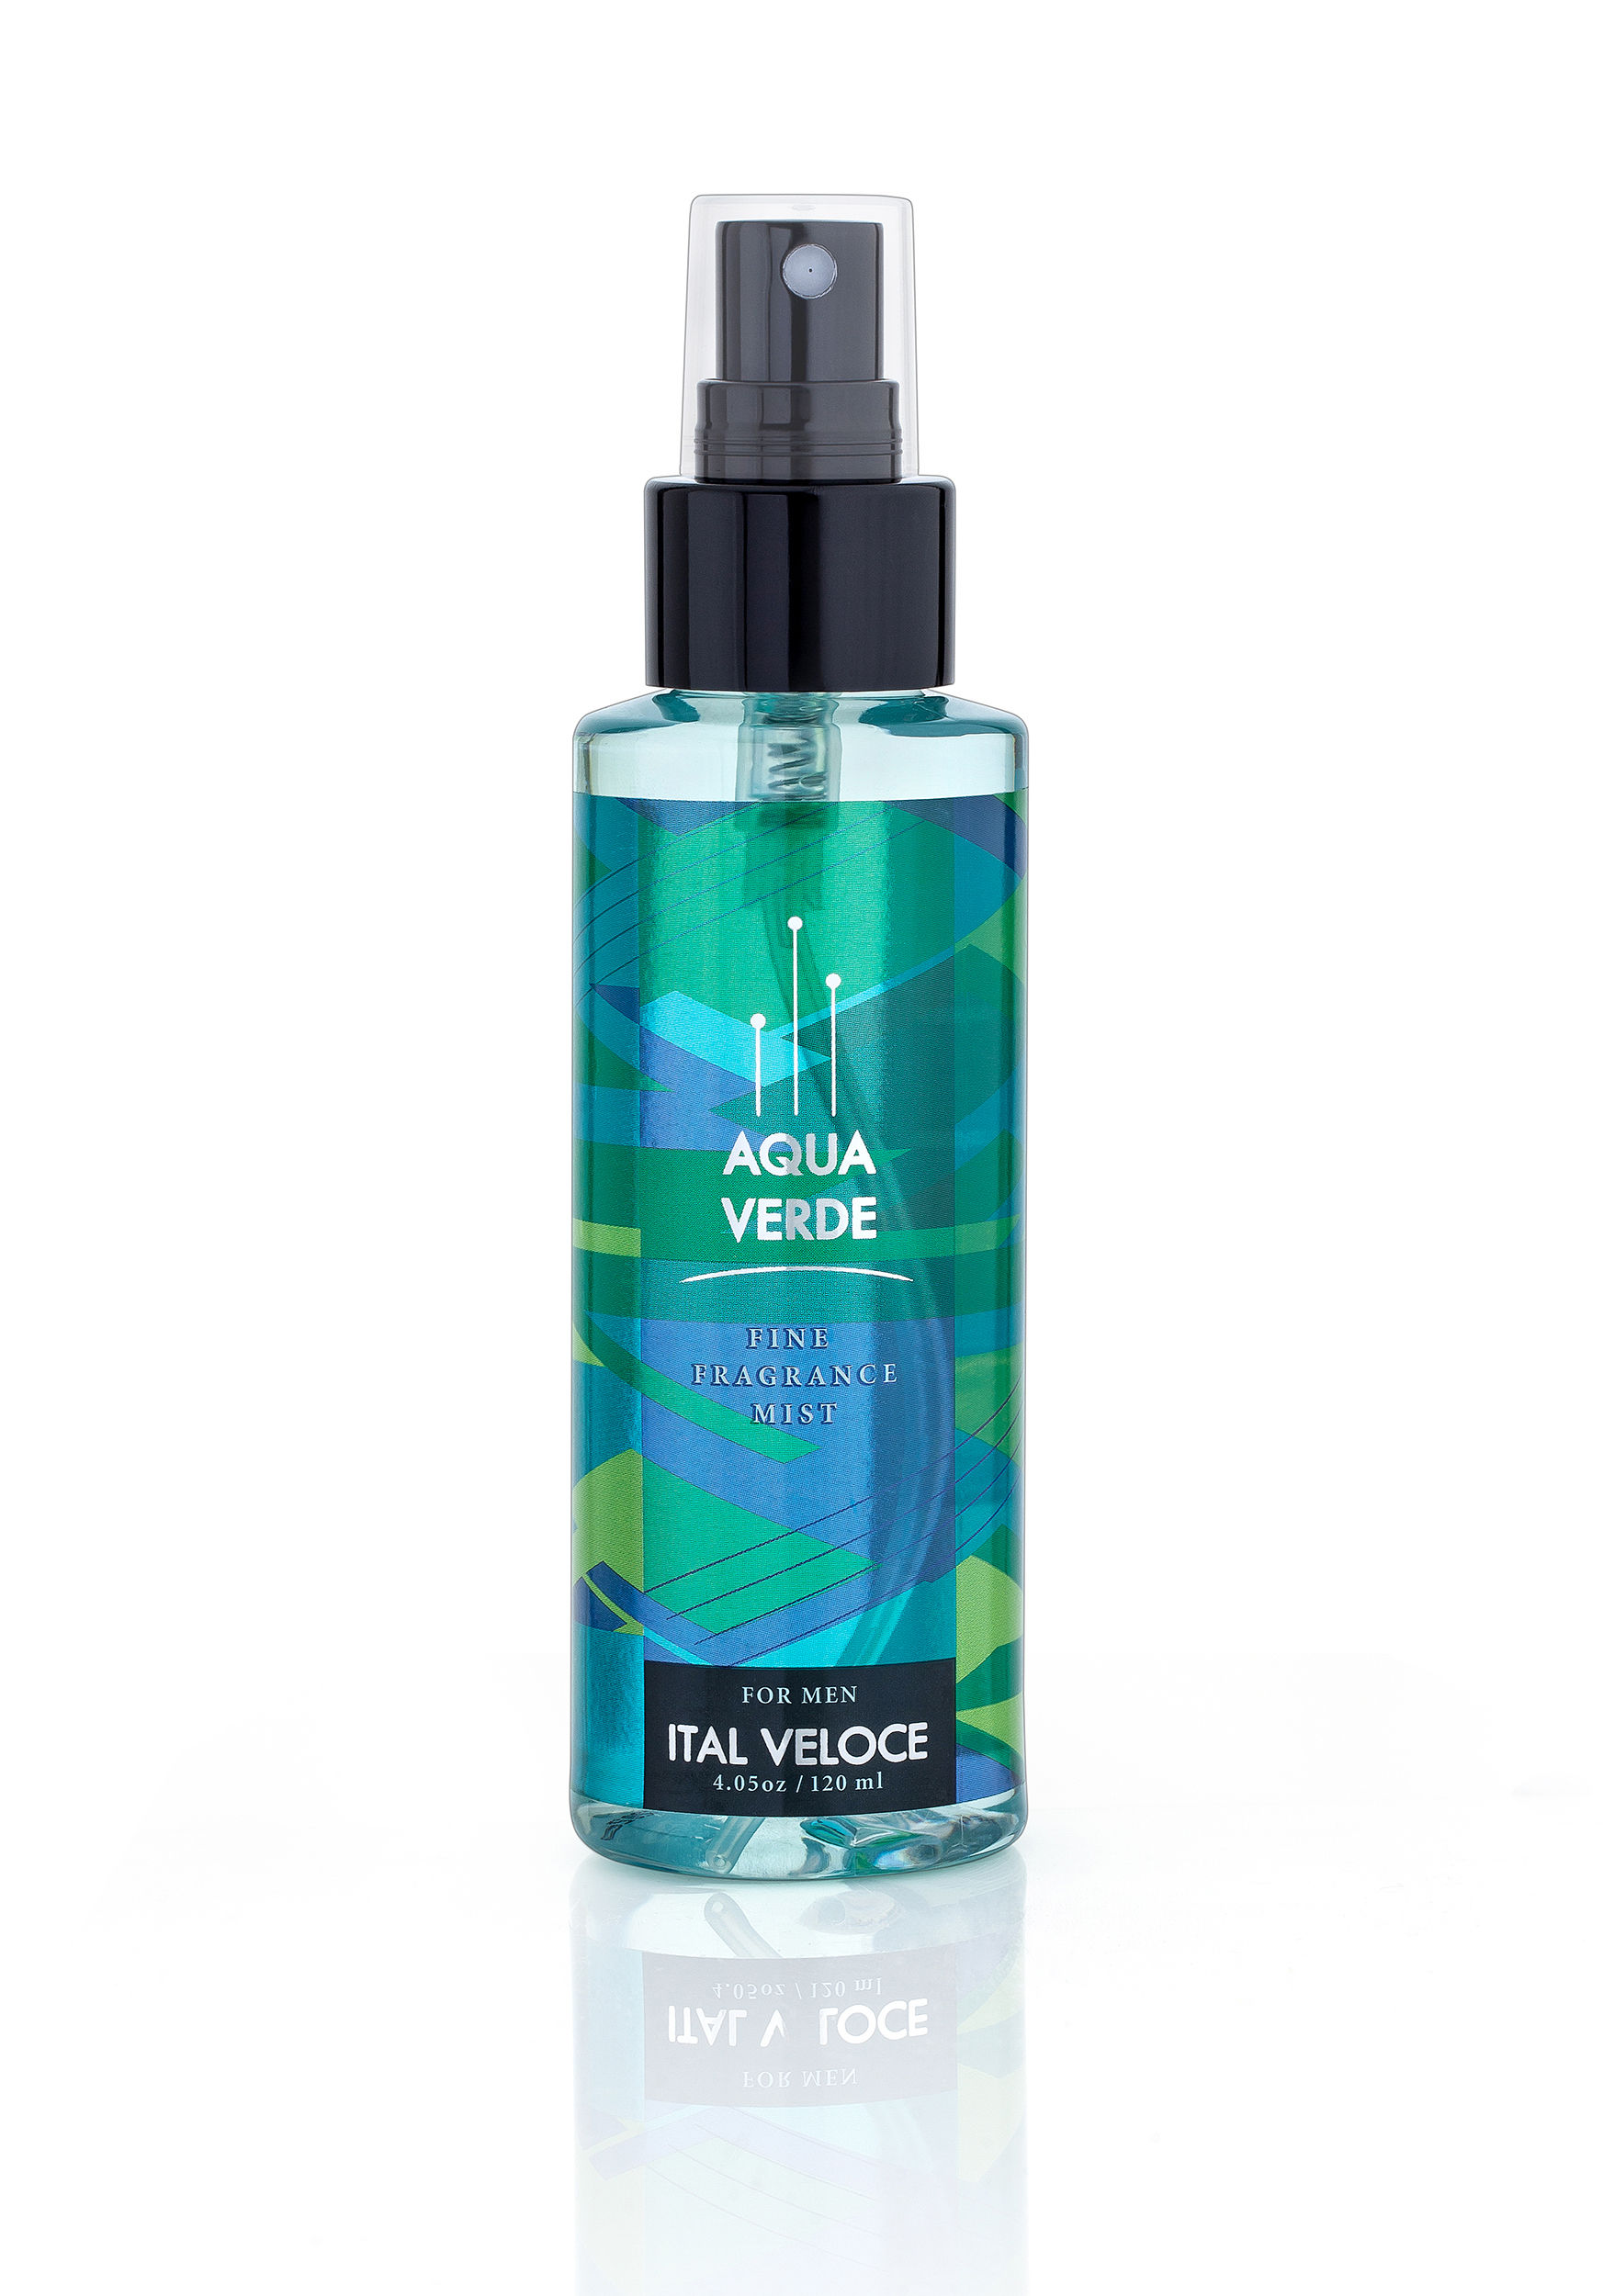 Ital Veloce Aqua Verde Fine Fragrance Mist For Men